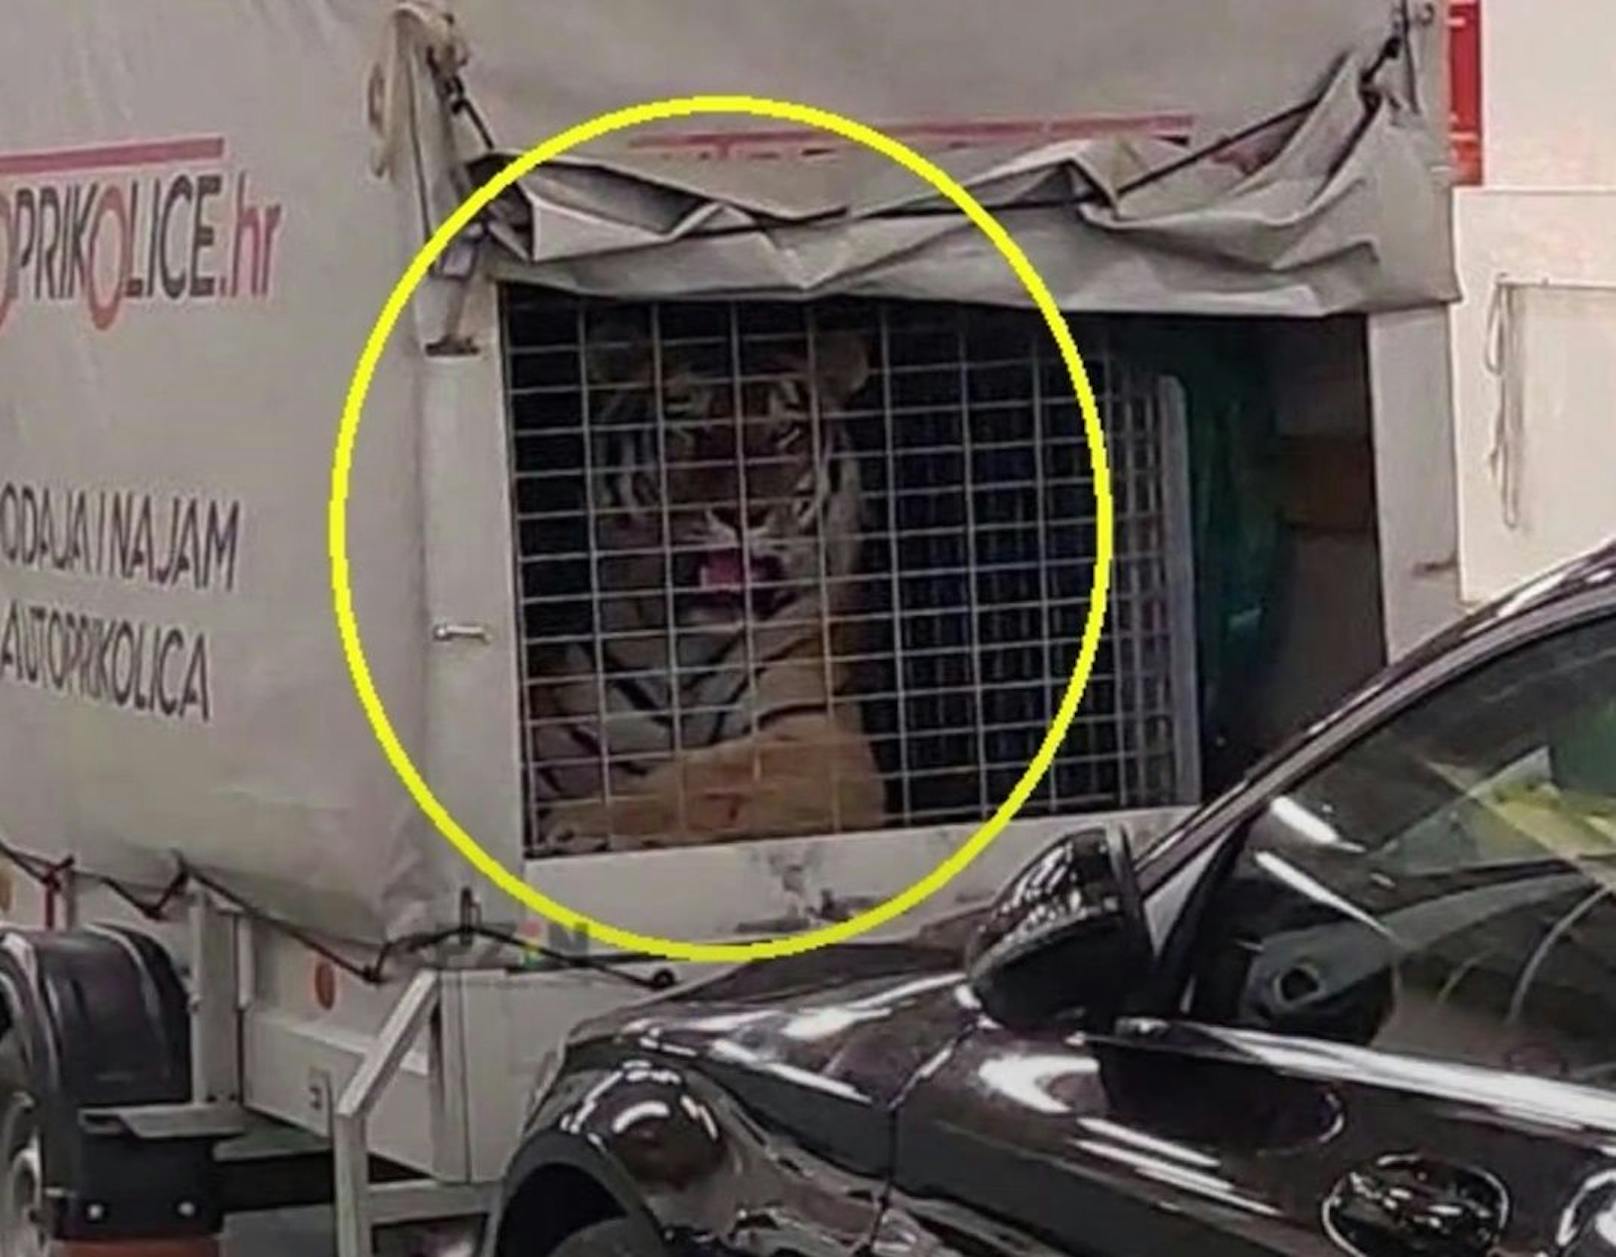 "Wussten nichts": Tiger auf Kroatien-Fähre geschmuggelt